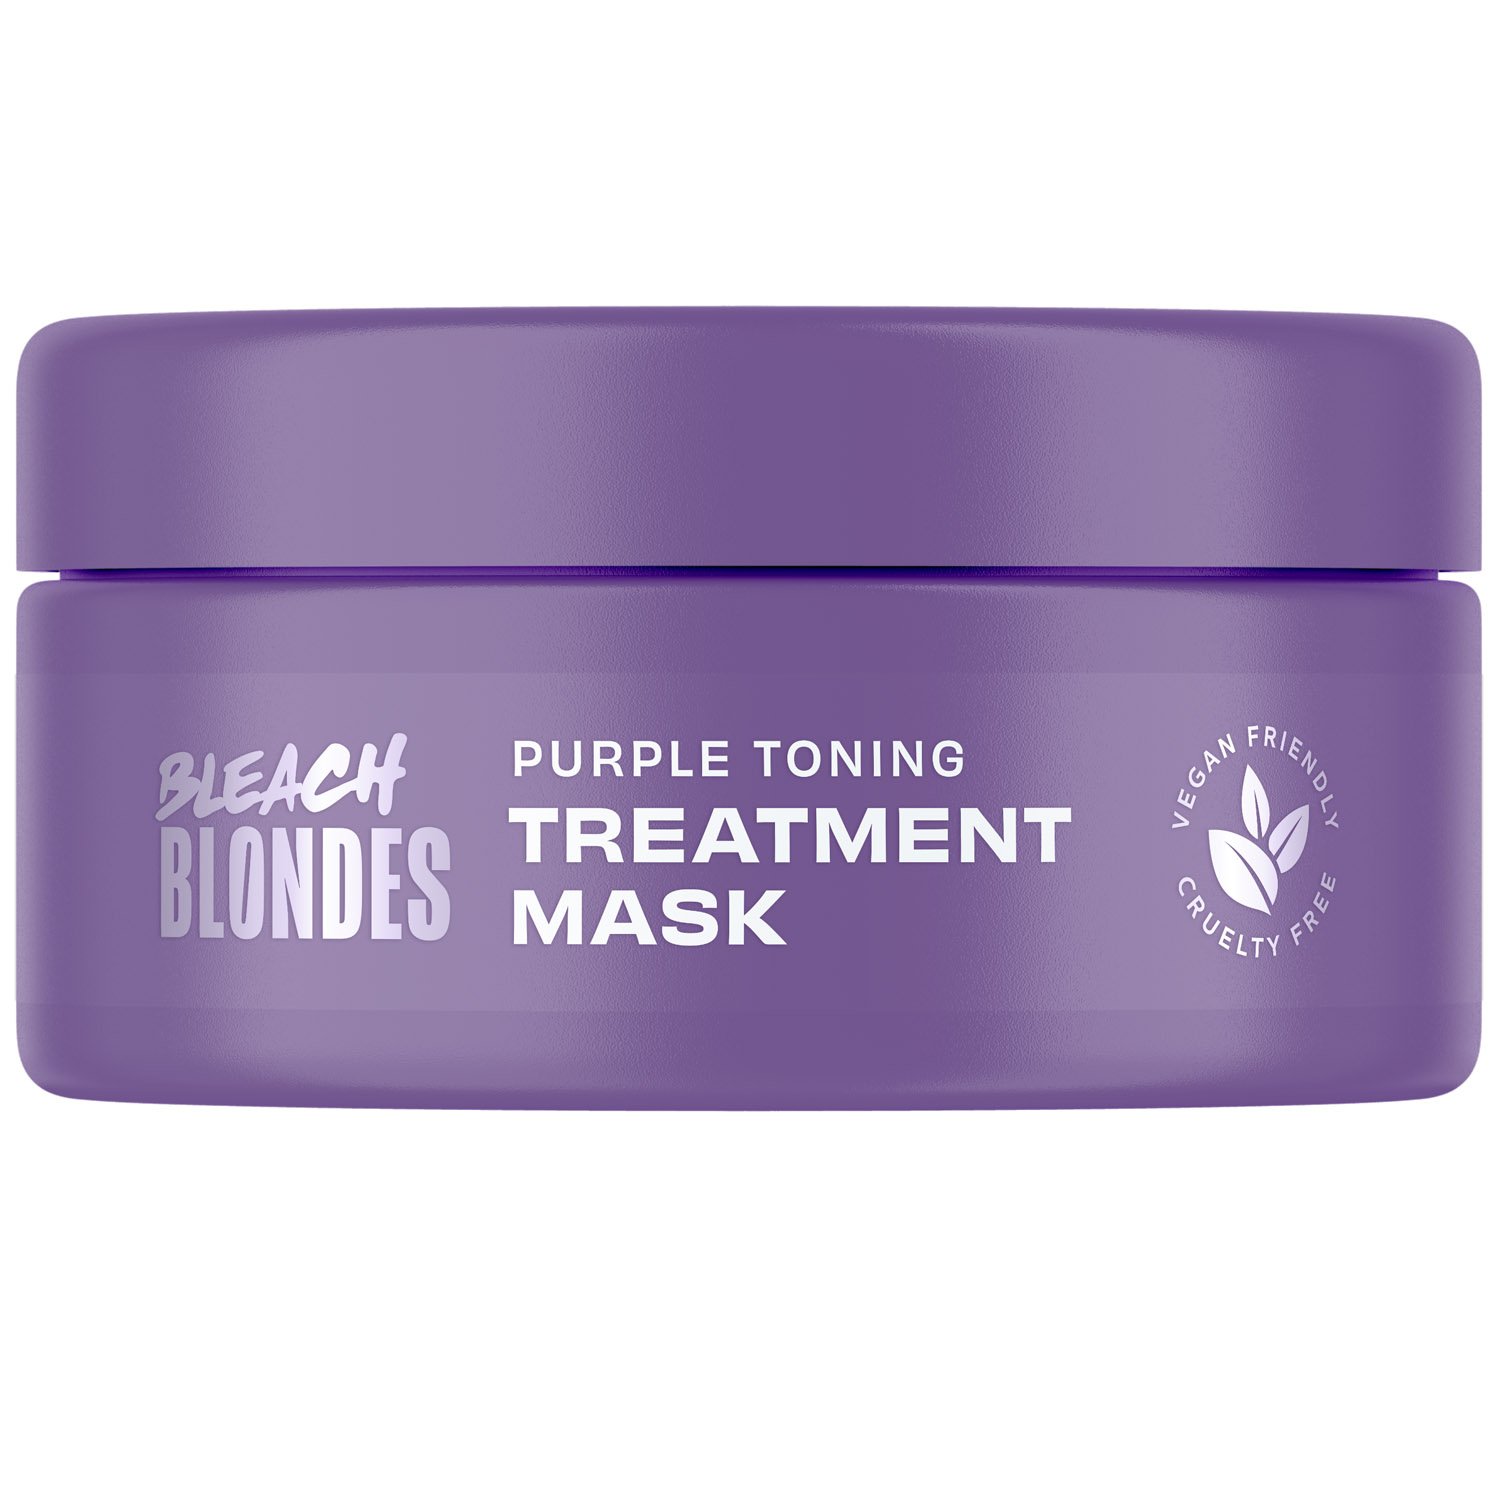 Маска для волос Lee Stafford Bleach Blondes Purple Toning Treatment Mask тонирующая 250 мл - фото 1